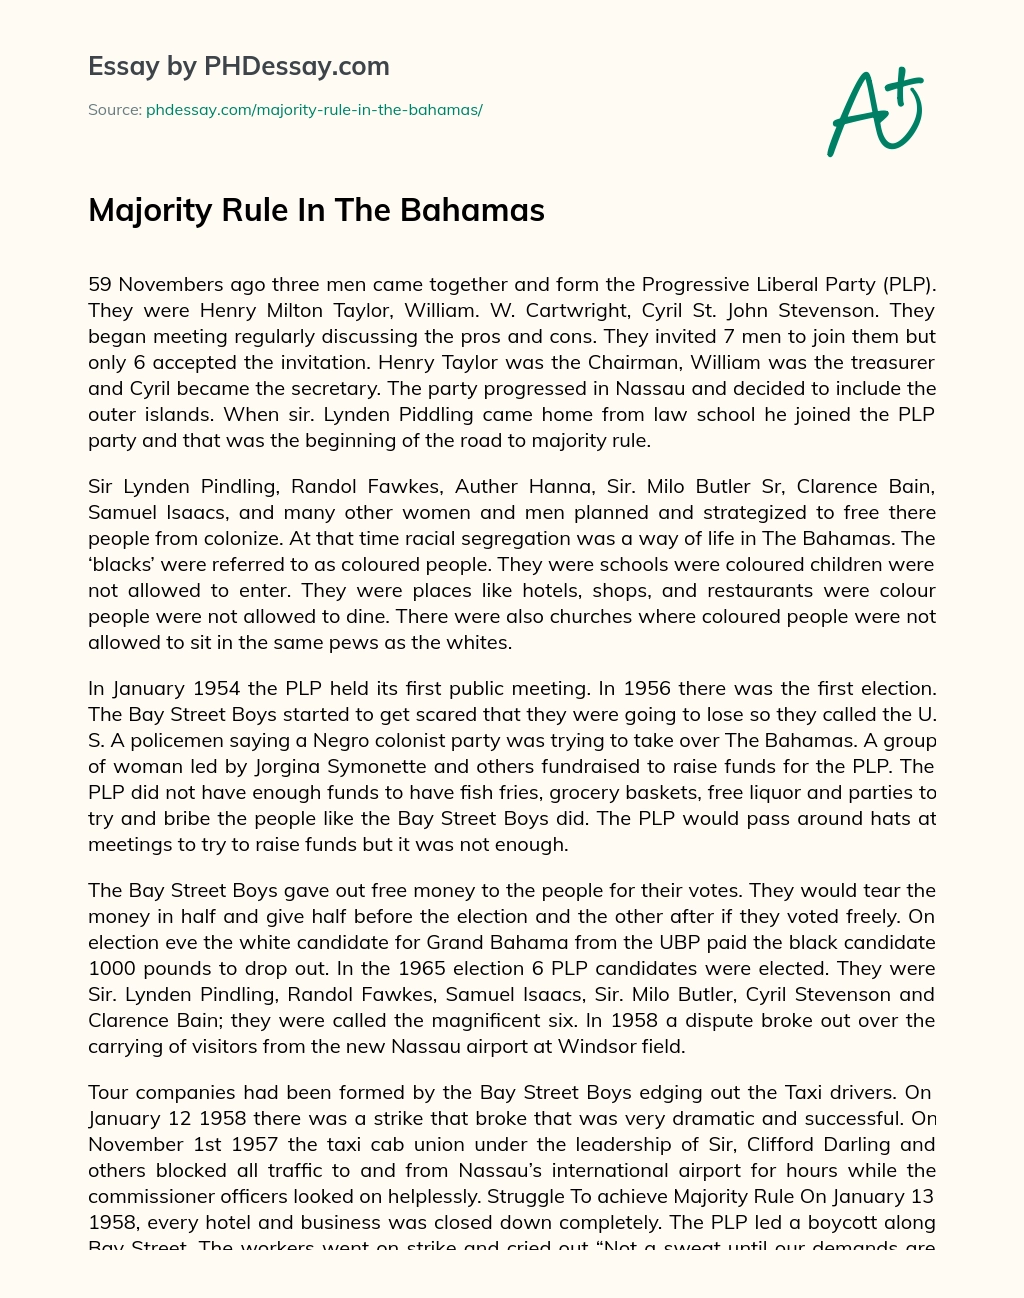 Majority Rule In The Bahamas essay